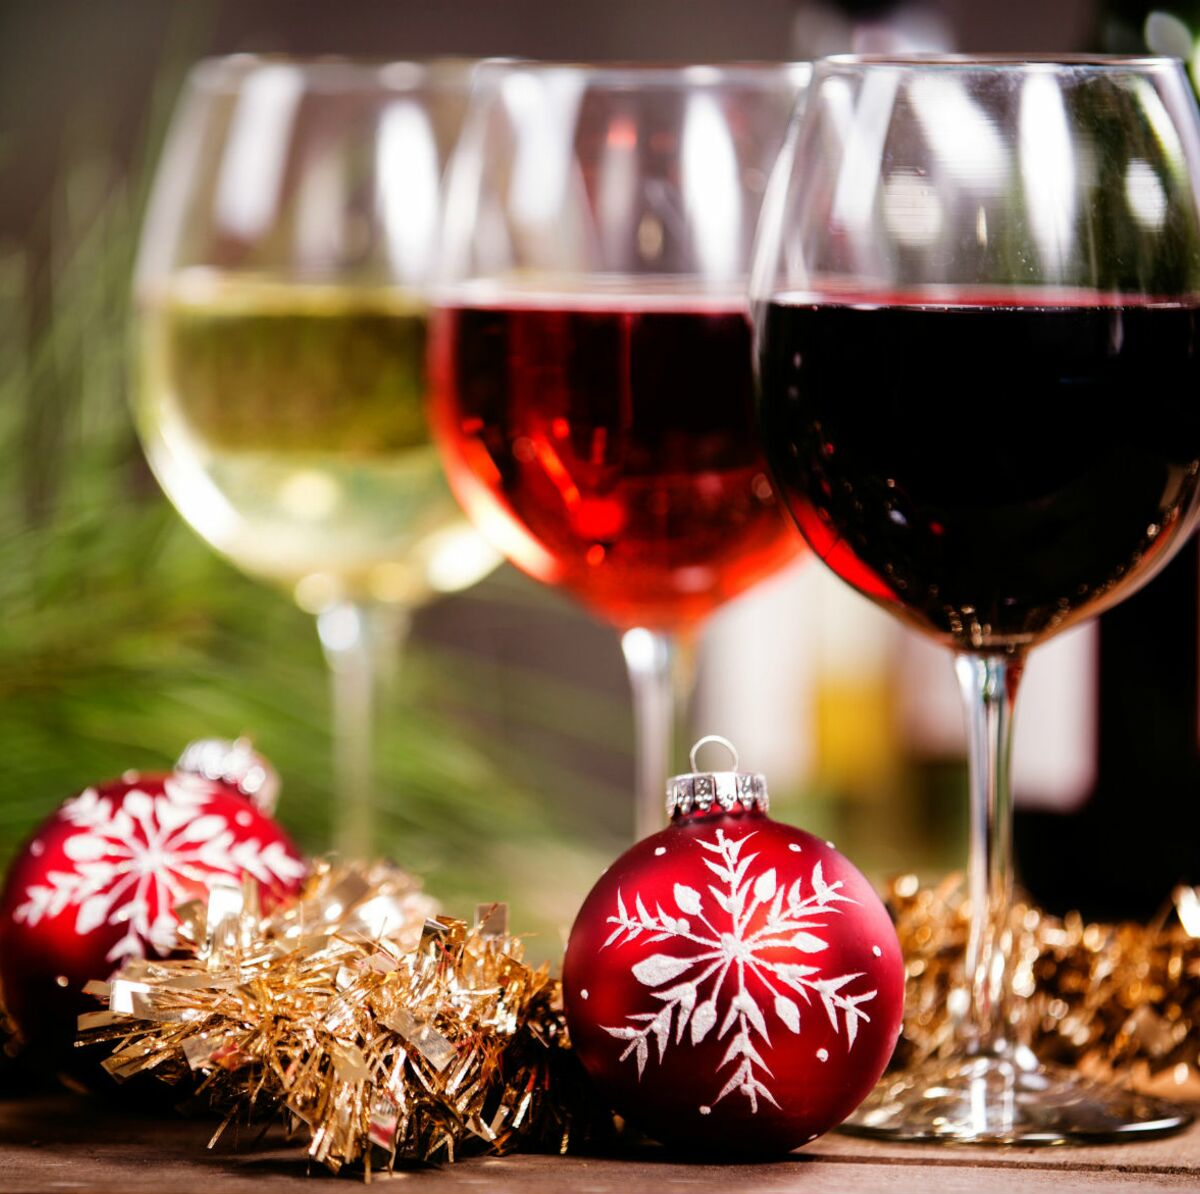 Comment faire un bon vin chaud de Noël maison ? - La Revue du vin de France